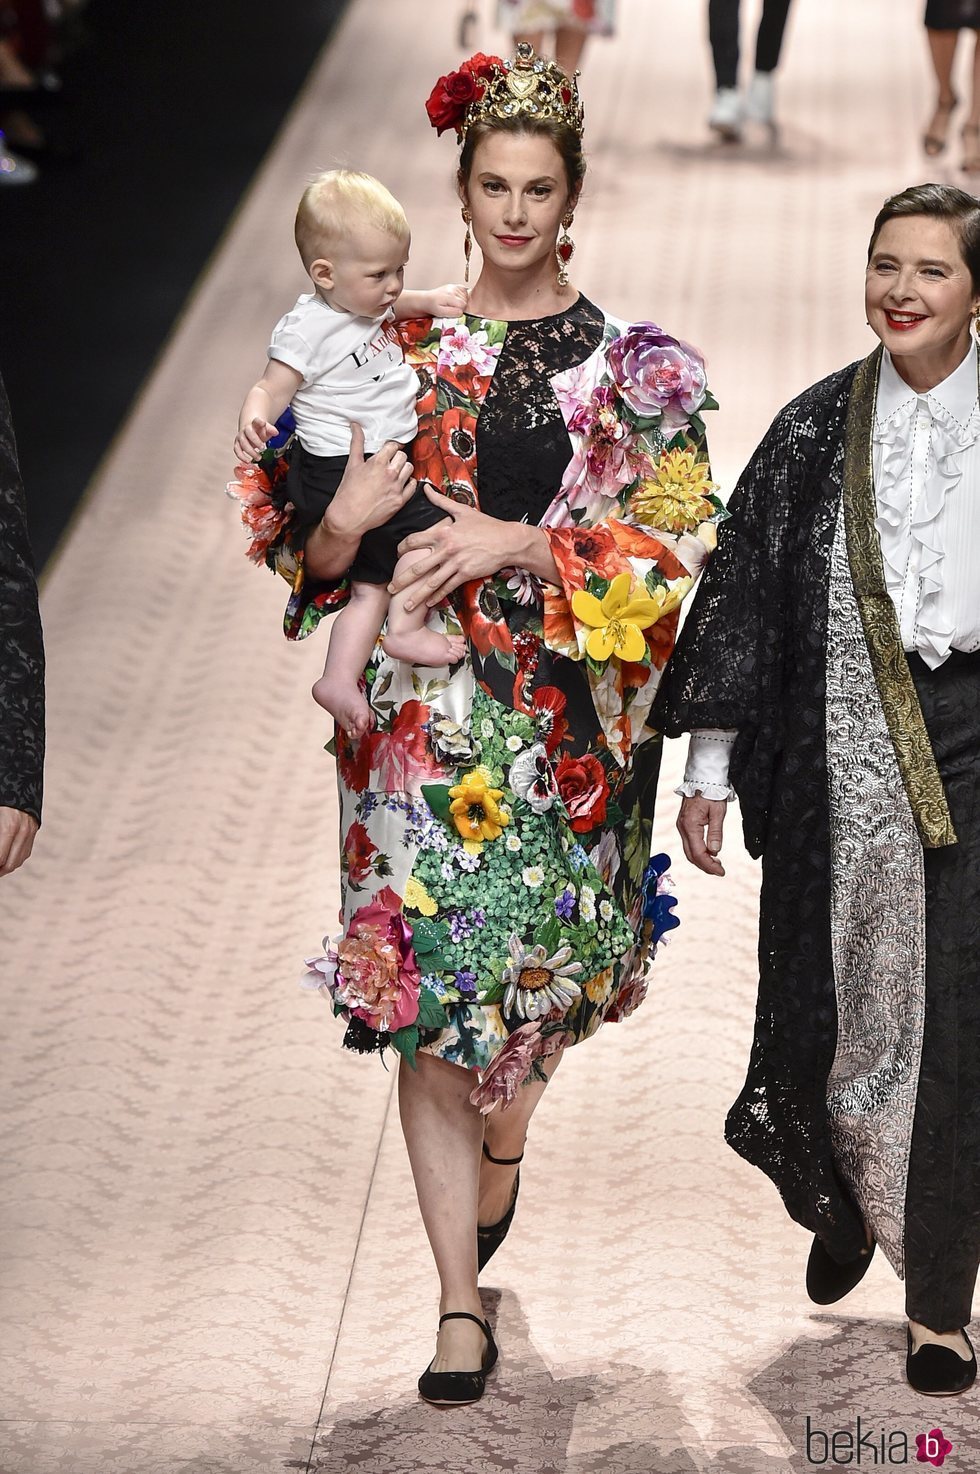 Elettra Wiedemann en el desfile de Dolce&Gabbana primavera/verano 2019 en la Milán Fashion Week